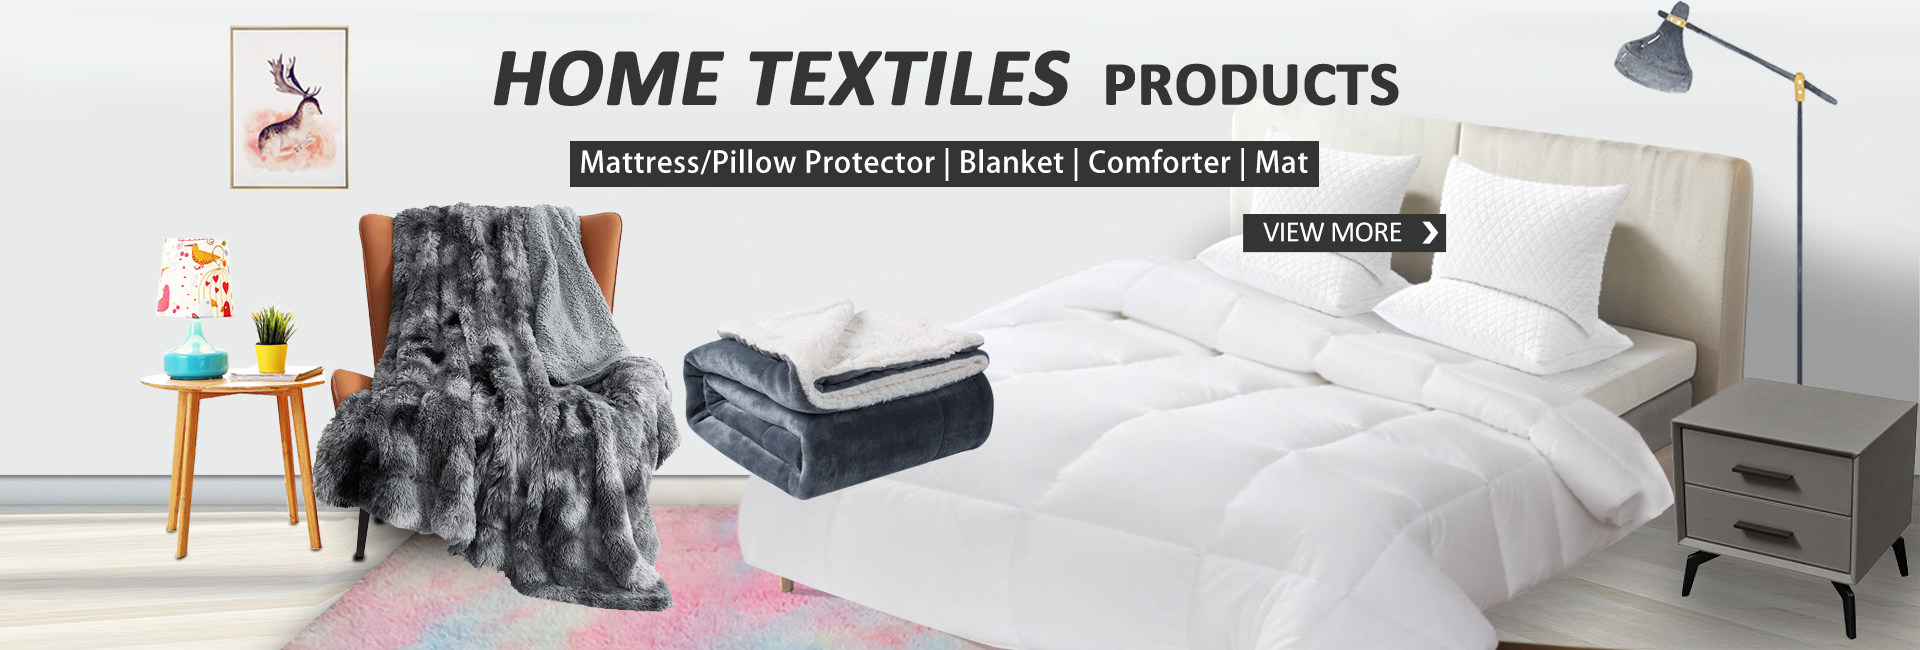 Home textiles